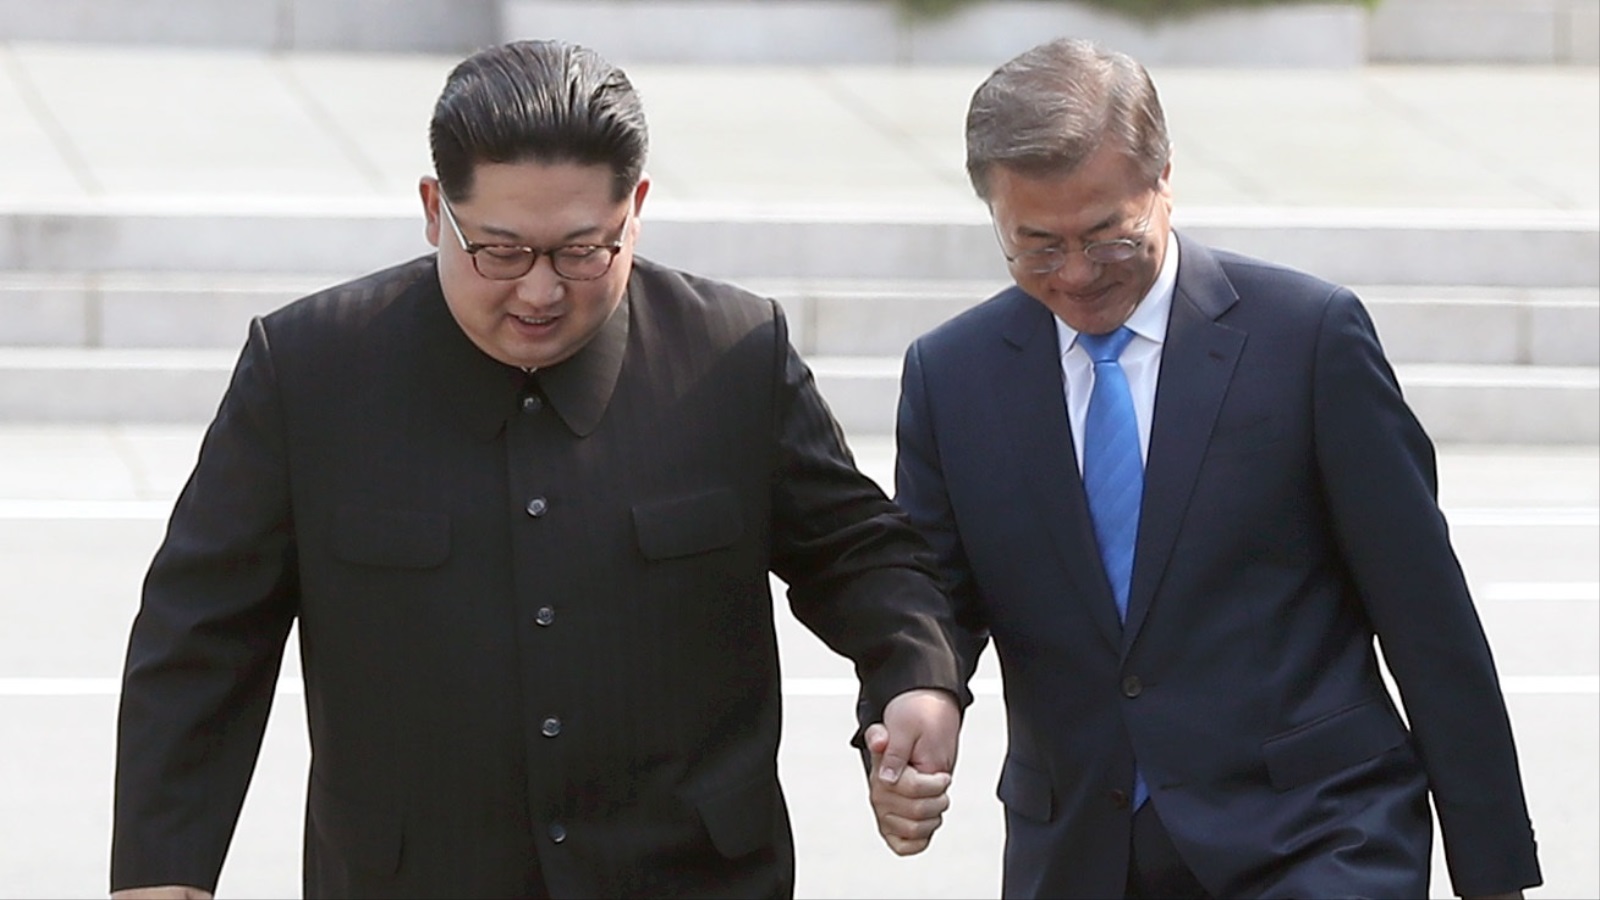 ‪زعيما الكوريتين يترافقان في طريقهما لجلسة مباحثات القمة التاريخية‬  زعيما الكوريتين يترافقان في طريقهما لجلسة مباحثات القمة التاريخية (غيتي)